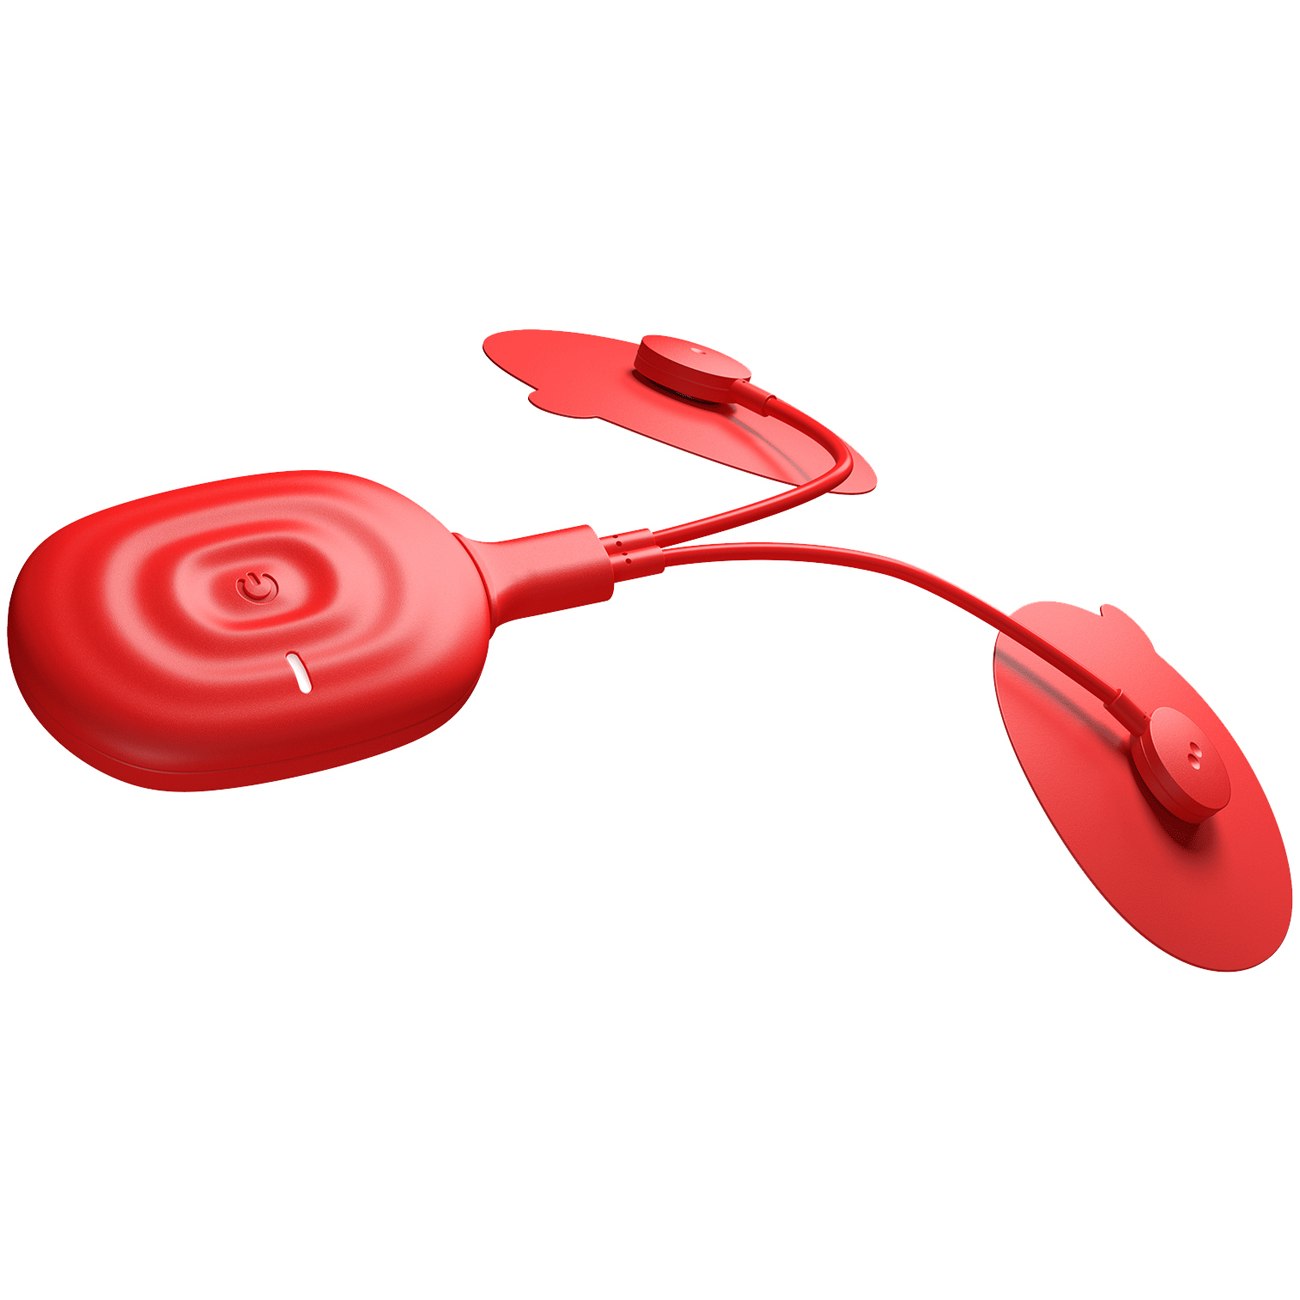 Produktbild von Powerdot Uno 2.0 Muskelstimulator - rot